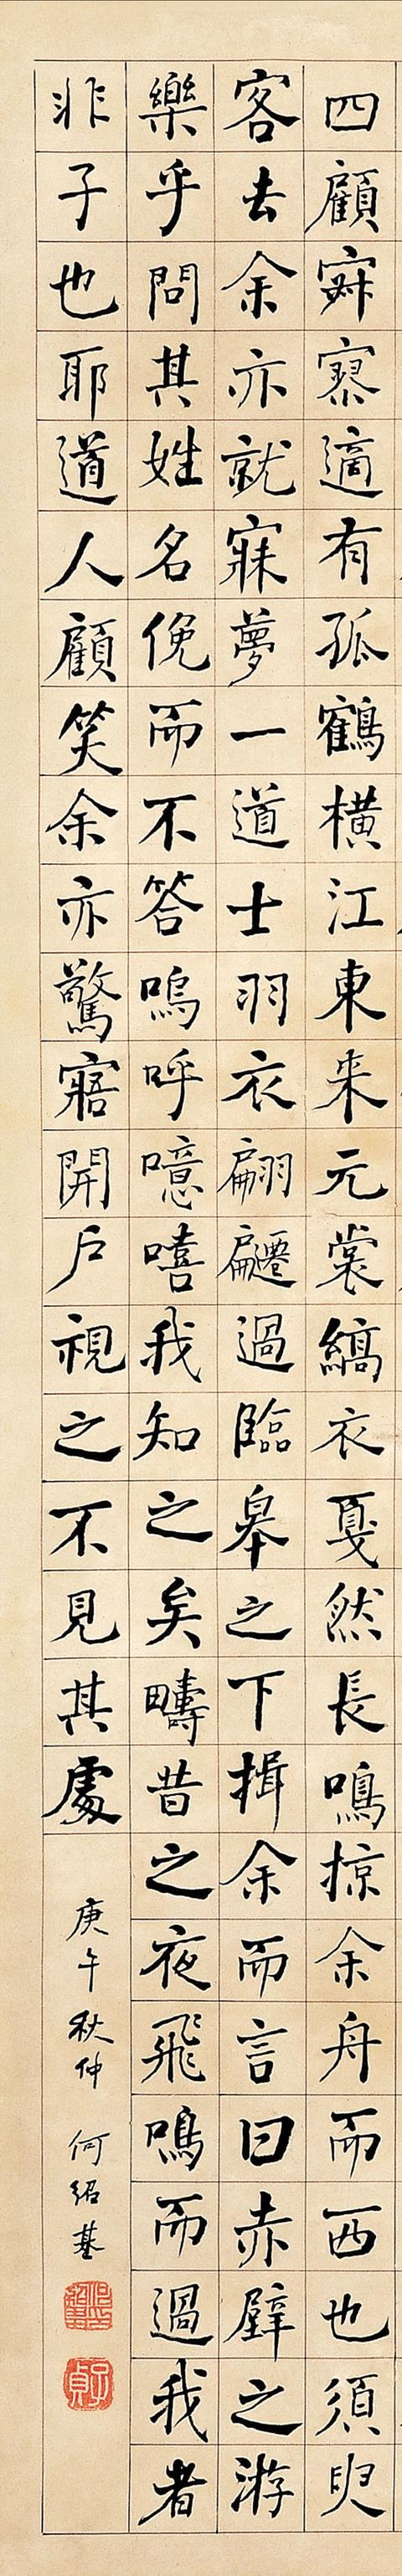 何绍基庚午（1870年） 楷书《后赤壁赋》立轴